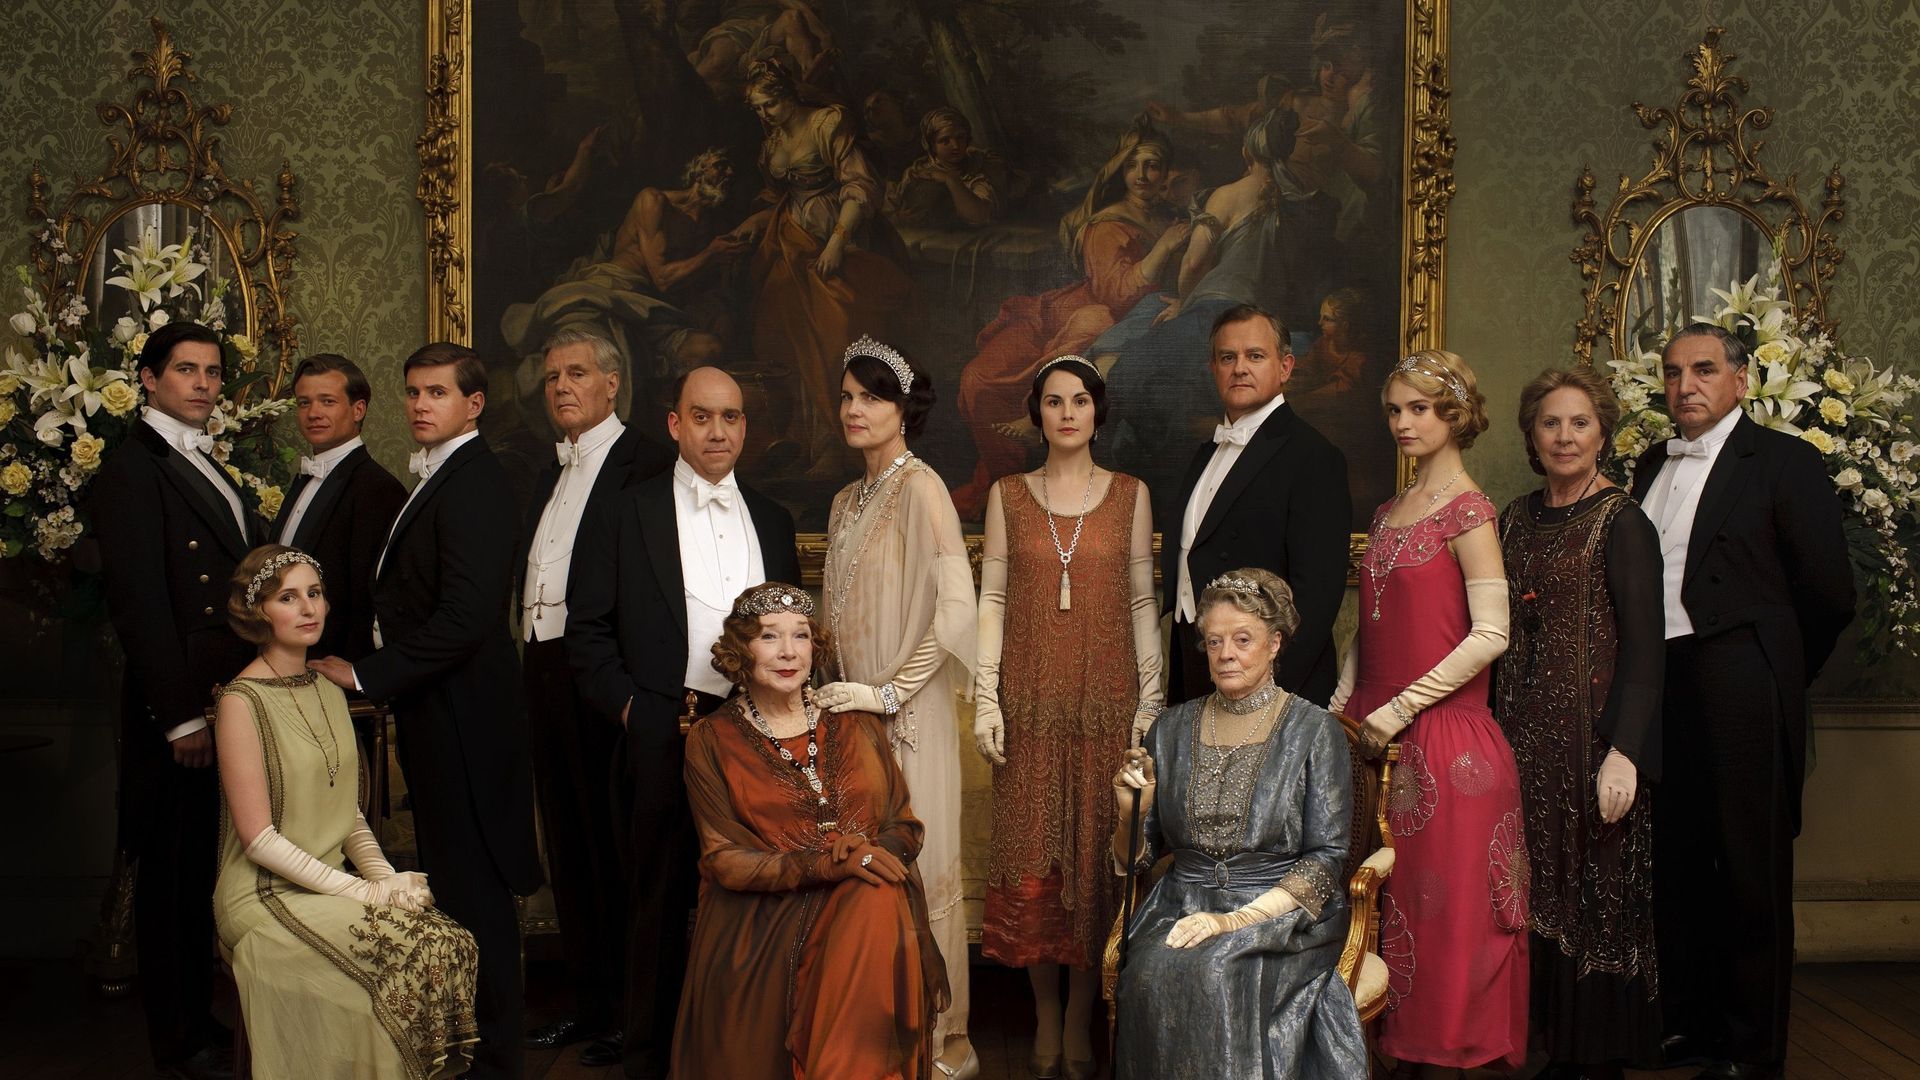 Parmi les sorties les plus attendues figure "Downton Abbey", la suite --mais sur grand écran-- des aventures de la famille Crawley, qui ont tenu en haleine de nombreux téléspectateurs pendant six saisons.